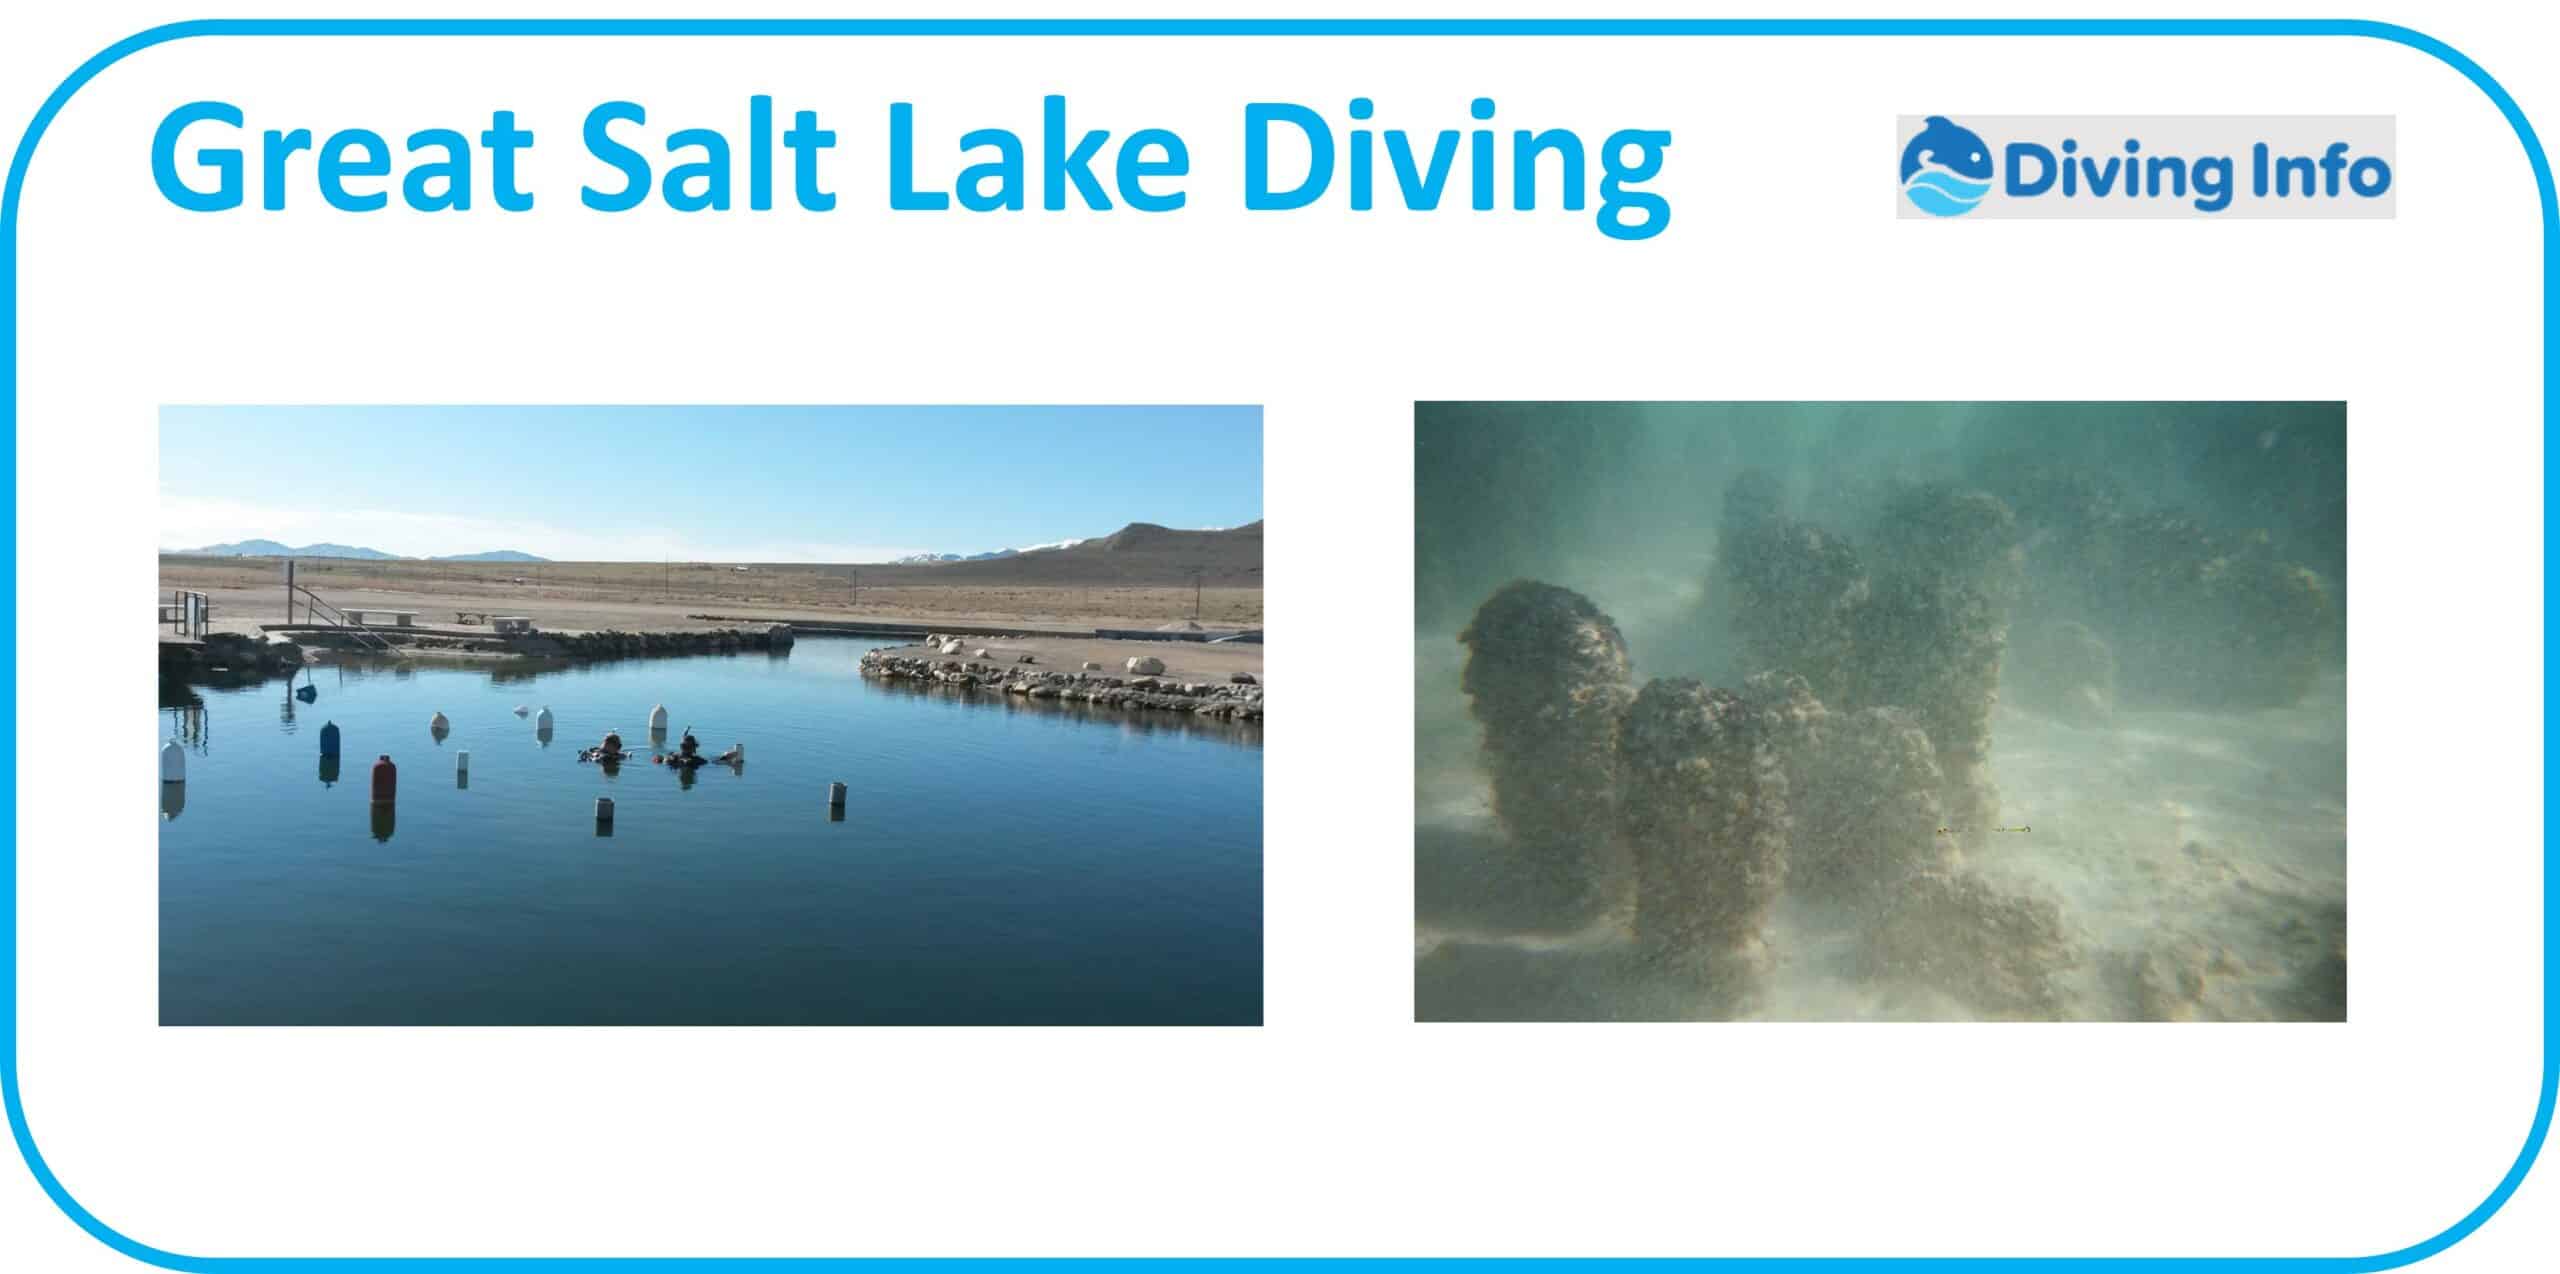 Great Salt Lake Diving